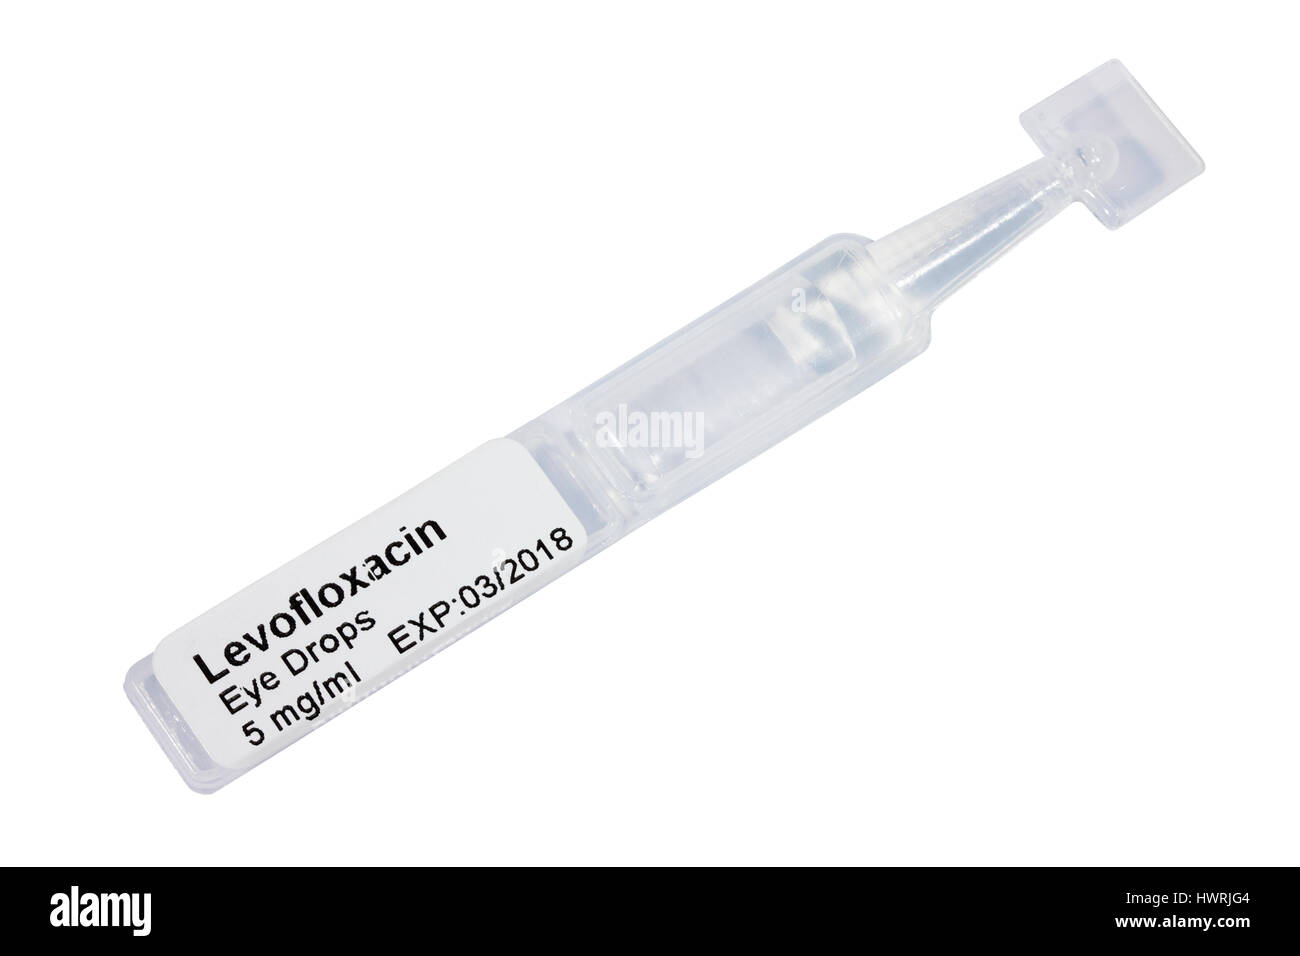 Oftaquix 5mg/ml Levofloxacin dose unique de 0,3 ml de solution oculaire / ampoule ampoule / capsule / / pipette compte-gouttes isolé sur fond blanc Banque D'Images